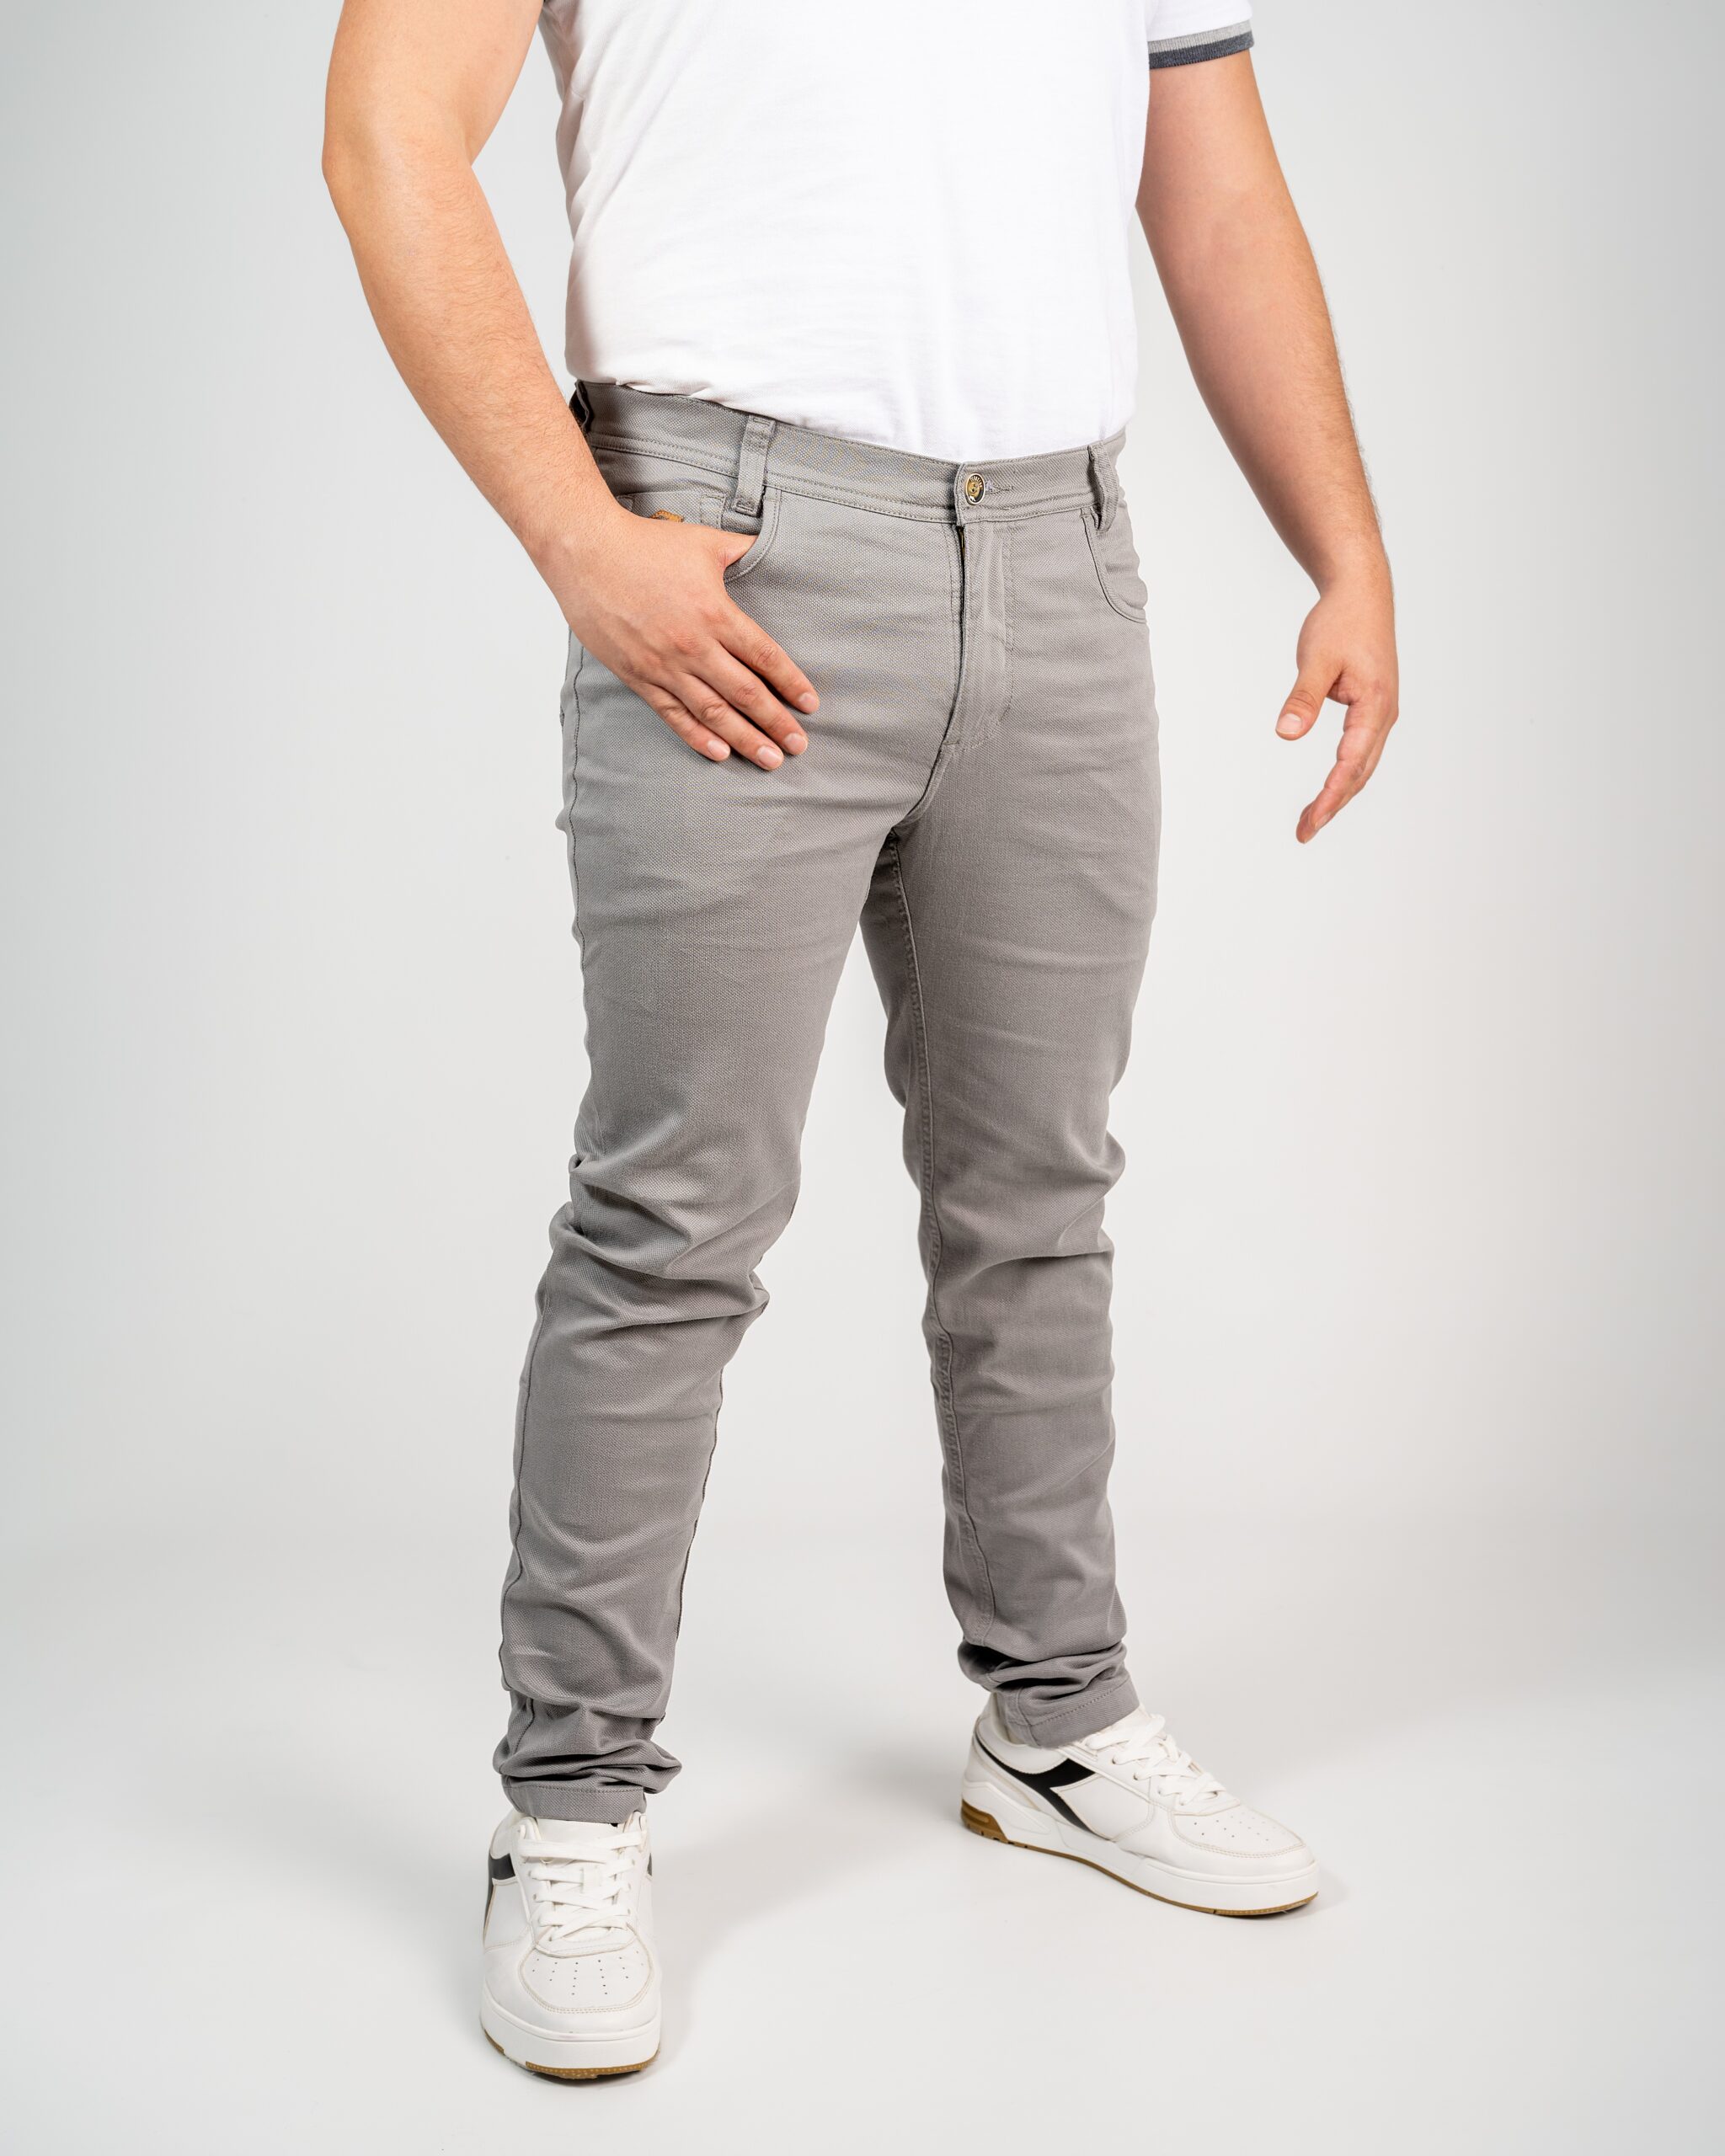 Pantalon Drill, Tela Tafetan con Bolsillo de Parche 5187 – Peroxido Jeans